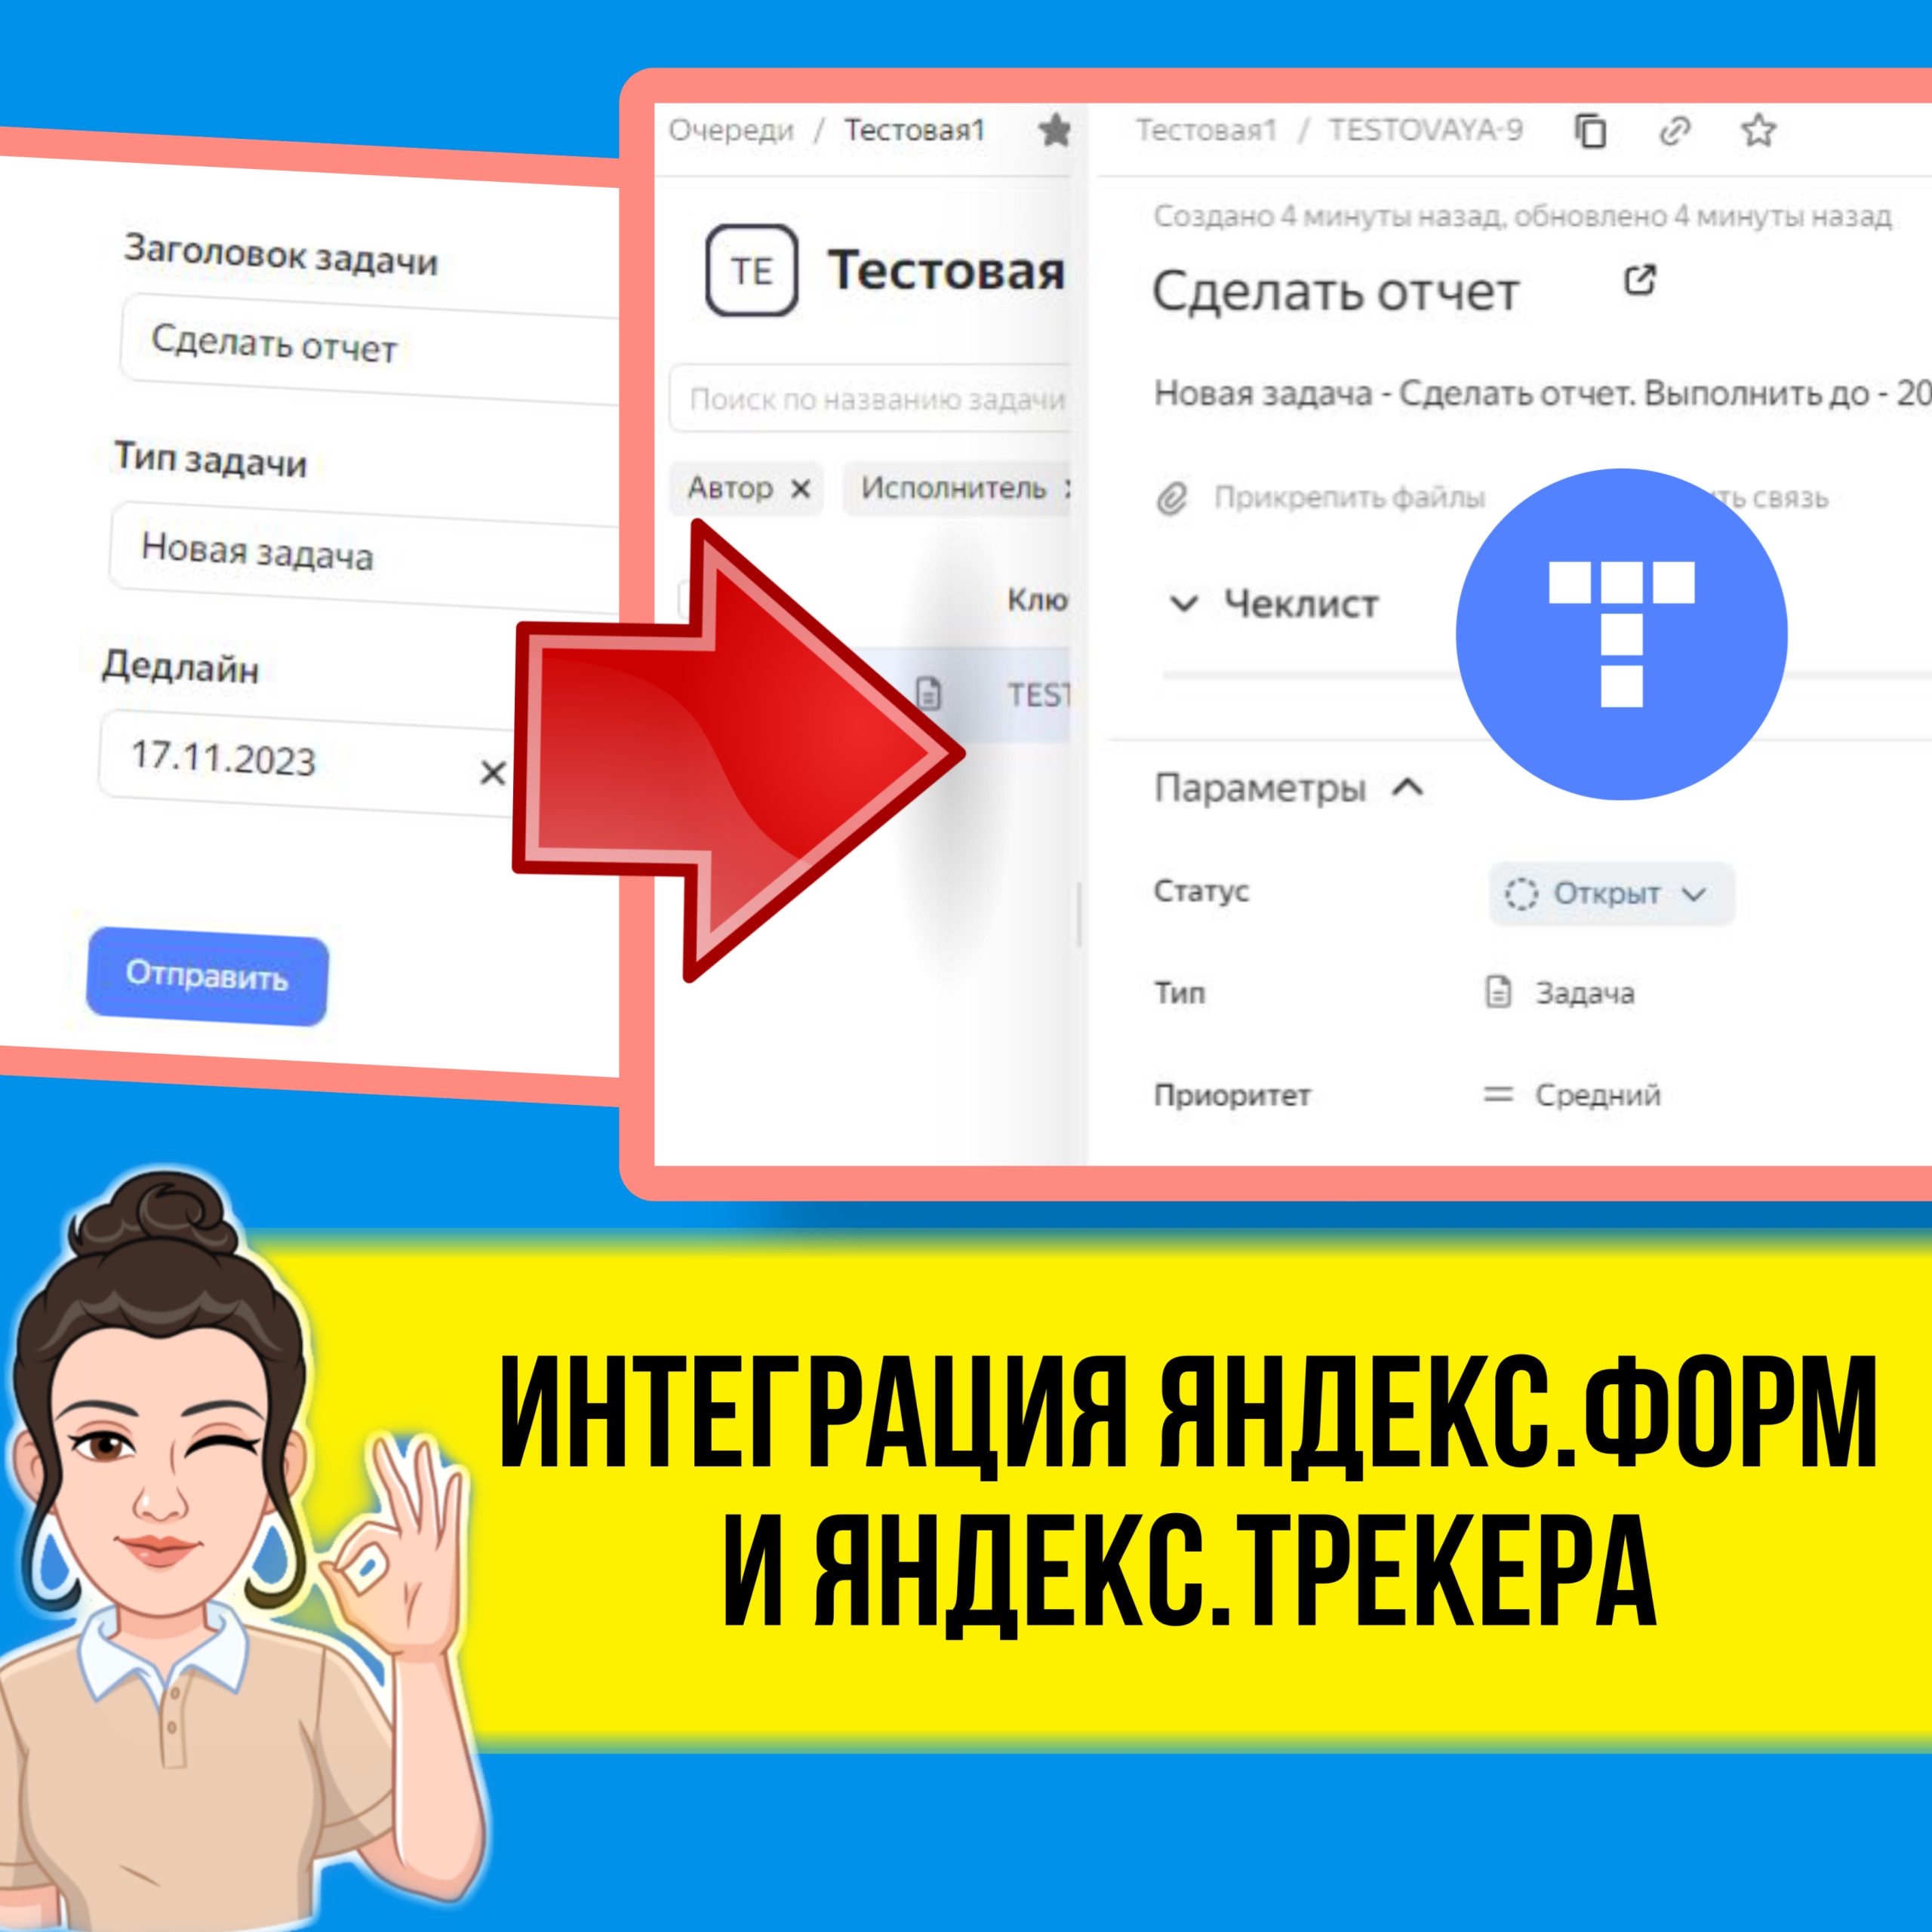 В этом уроке я покажу, как с помощью Яндекс.Форм можно автоматически создавать задачи в Яндекс.Трекере. Практический урок по интеграции сервисов.